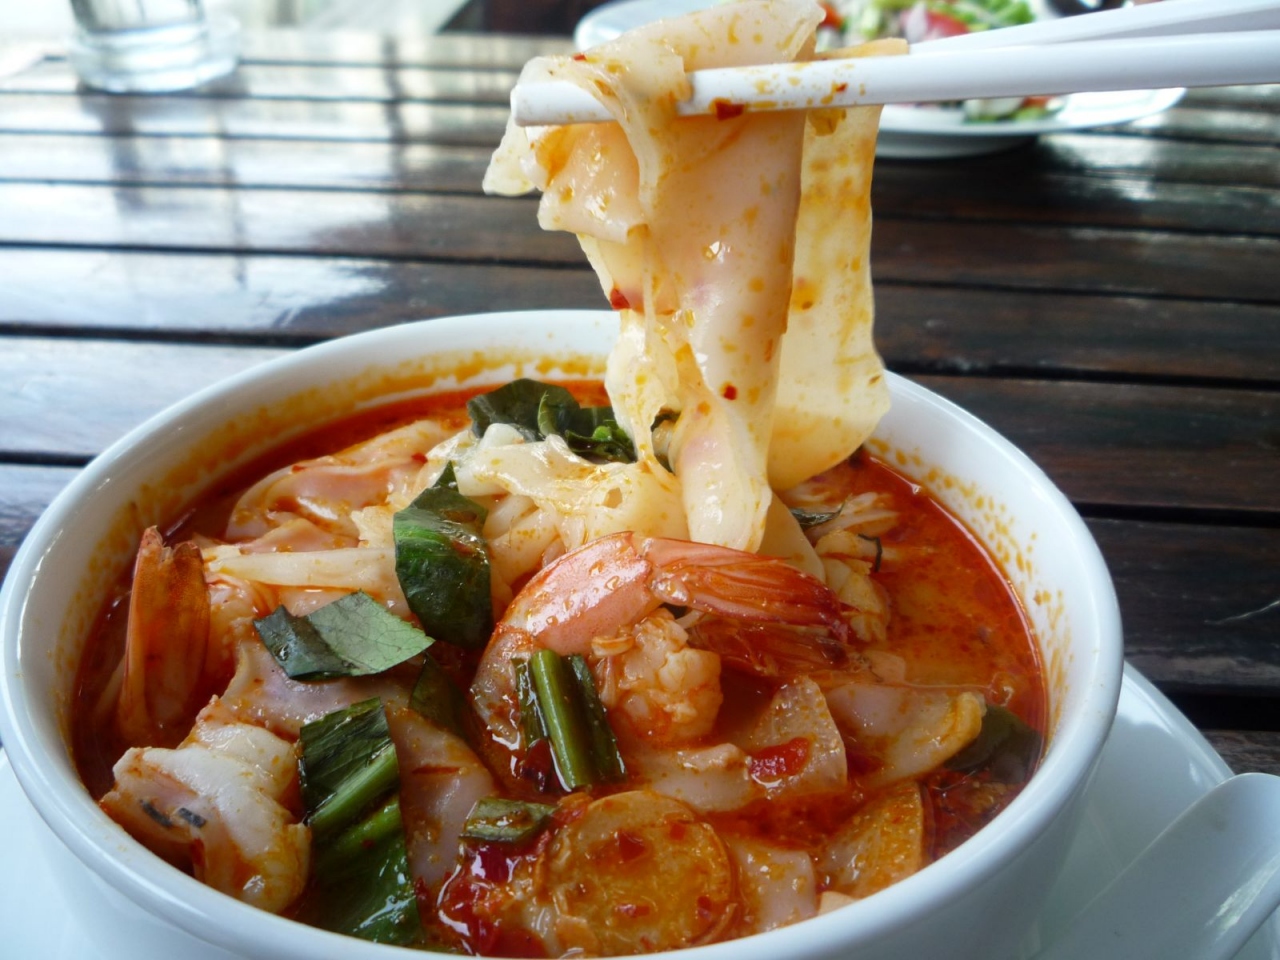 バンコクで美味しいタイ料理を トムヤムヌードル バンコク タイ の旅行記 ブログ By Cervo Montagnaさん フォートラベル